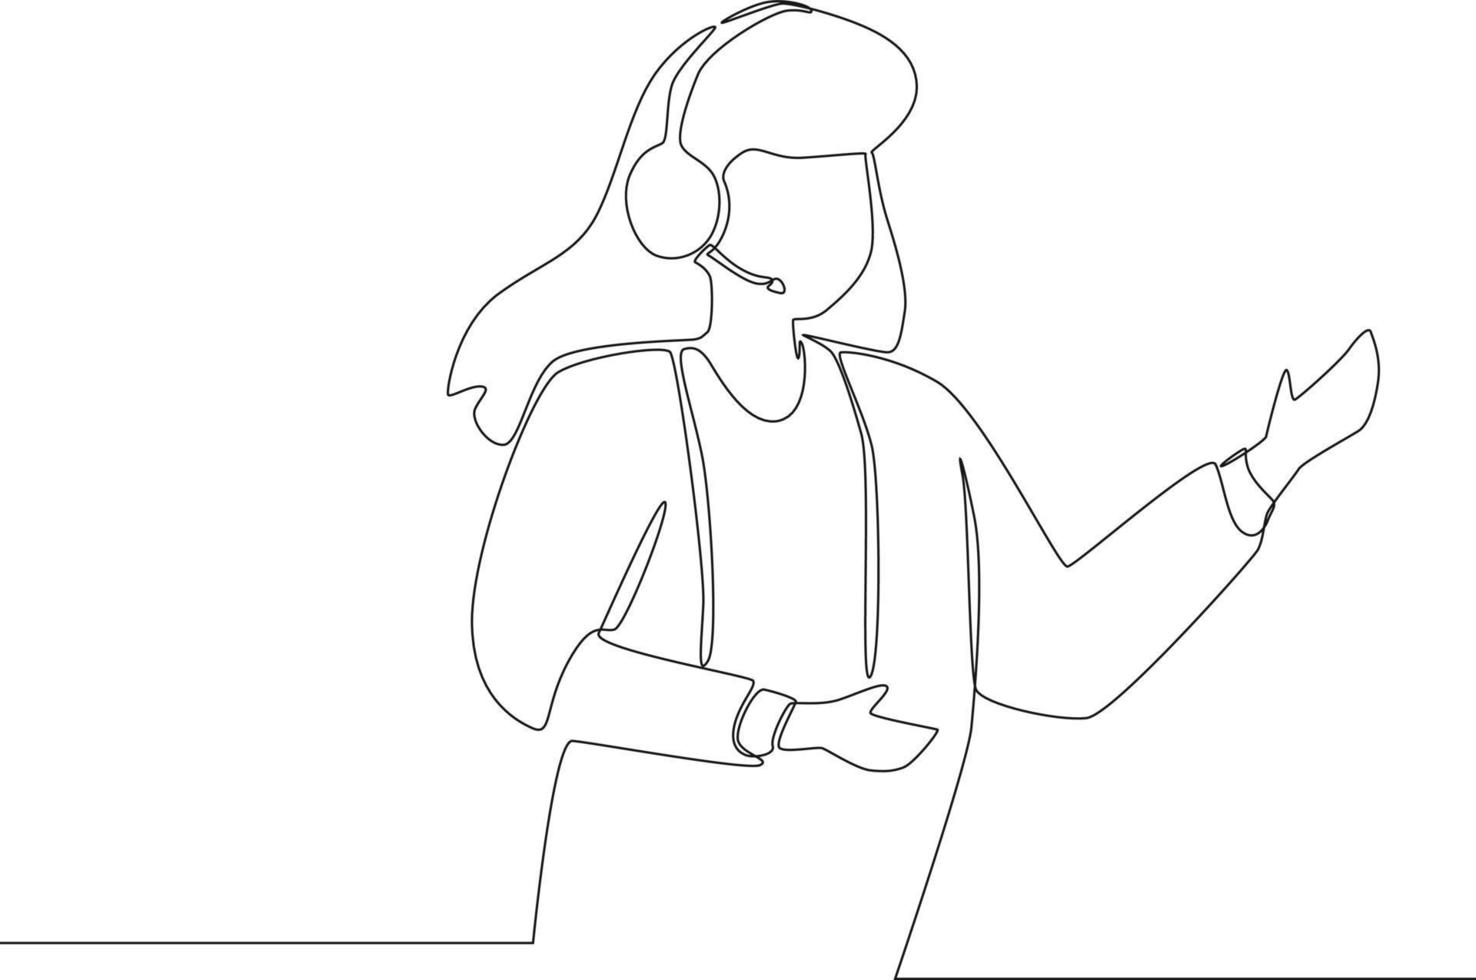 ligne continue simple, femme centre d'appels travaillant utiliser un casque au bureau. illustration vectorielle. vecteur